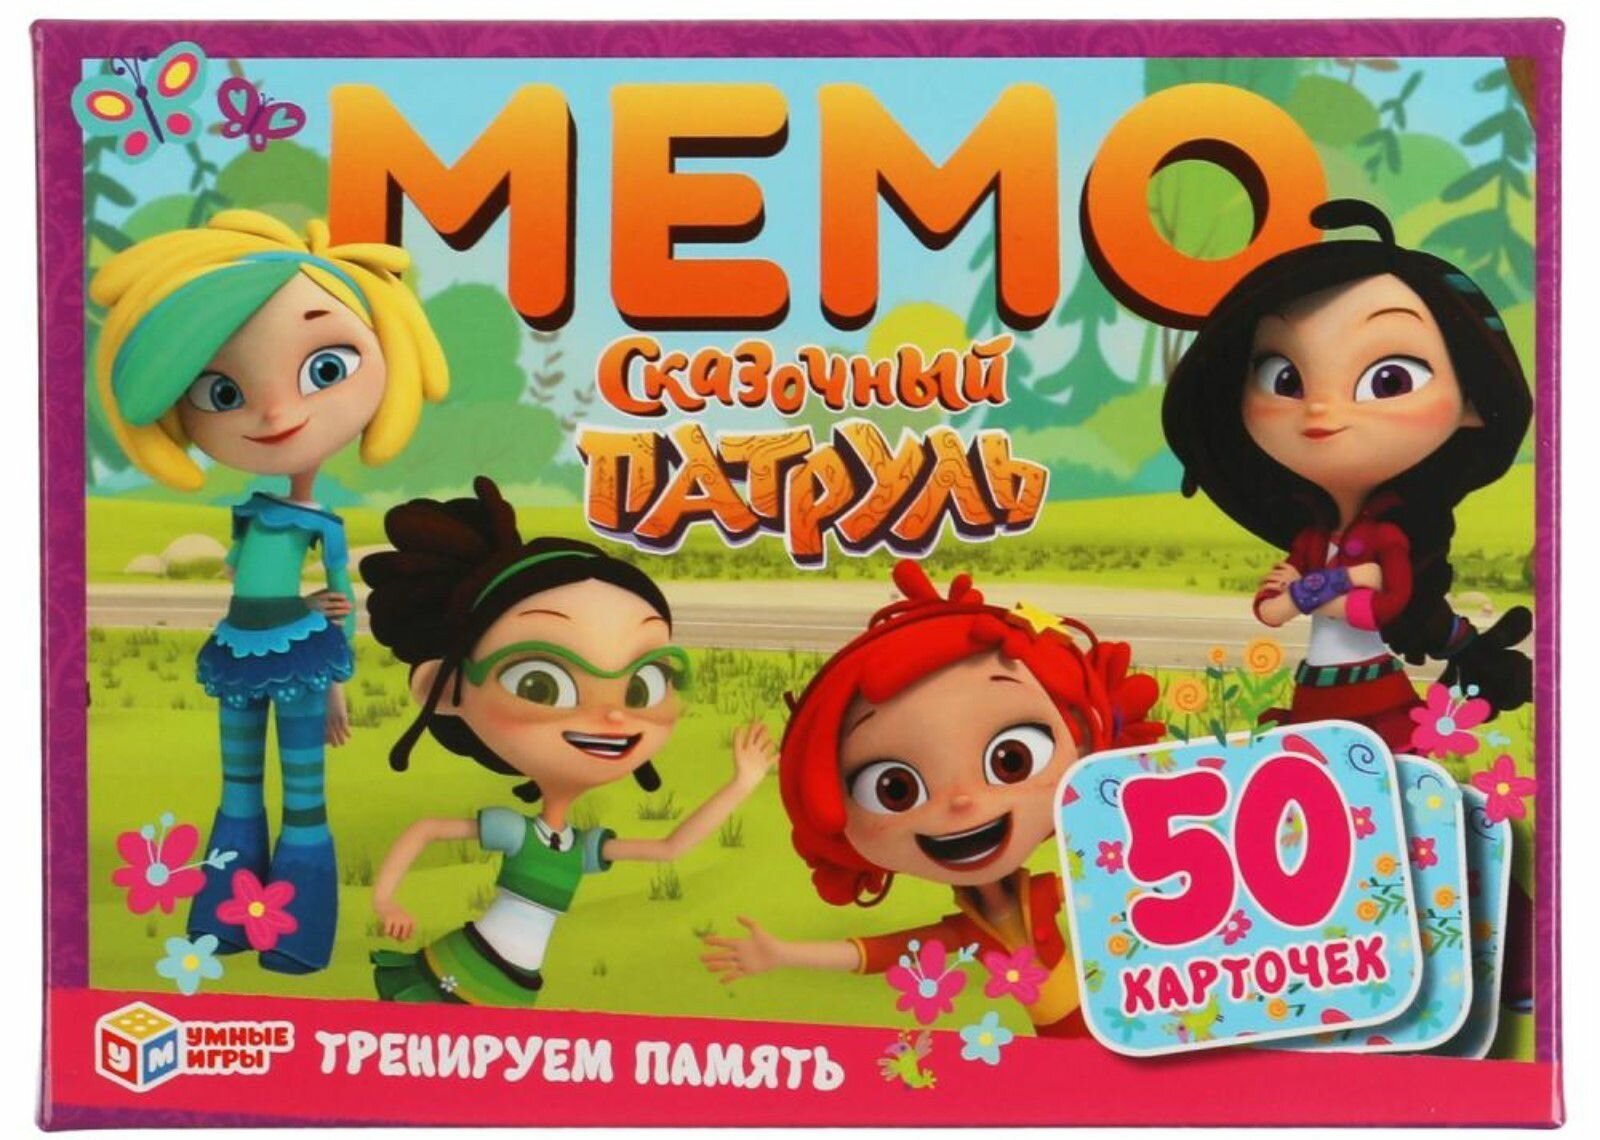 Настольная карточная игра Мемо "Сказочный патруль", детская познавательная мемори-игра для веселой компании, тренируем память, развиваем логику и внимание, игровой набор 50 карточек